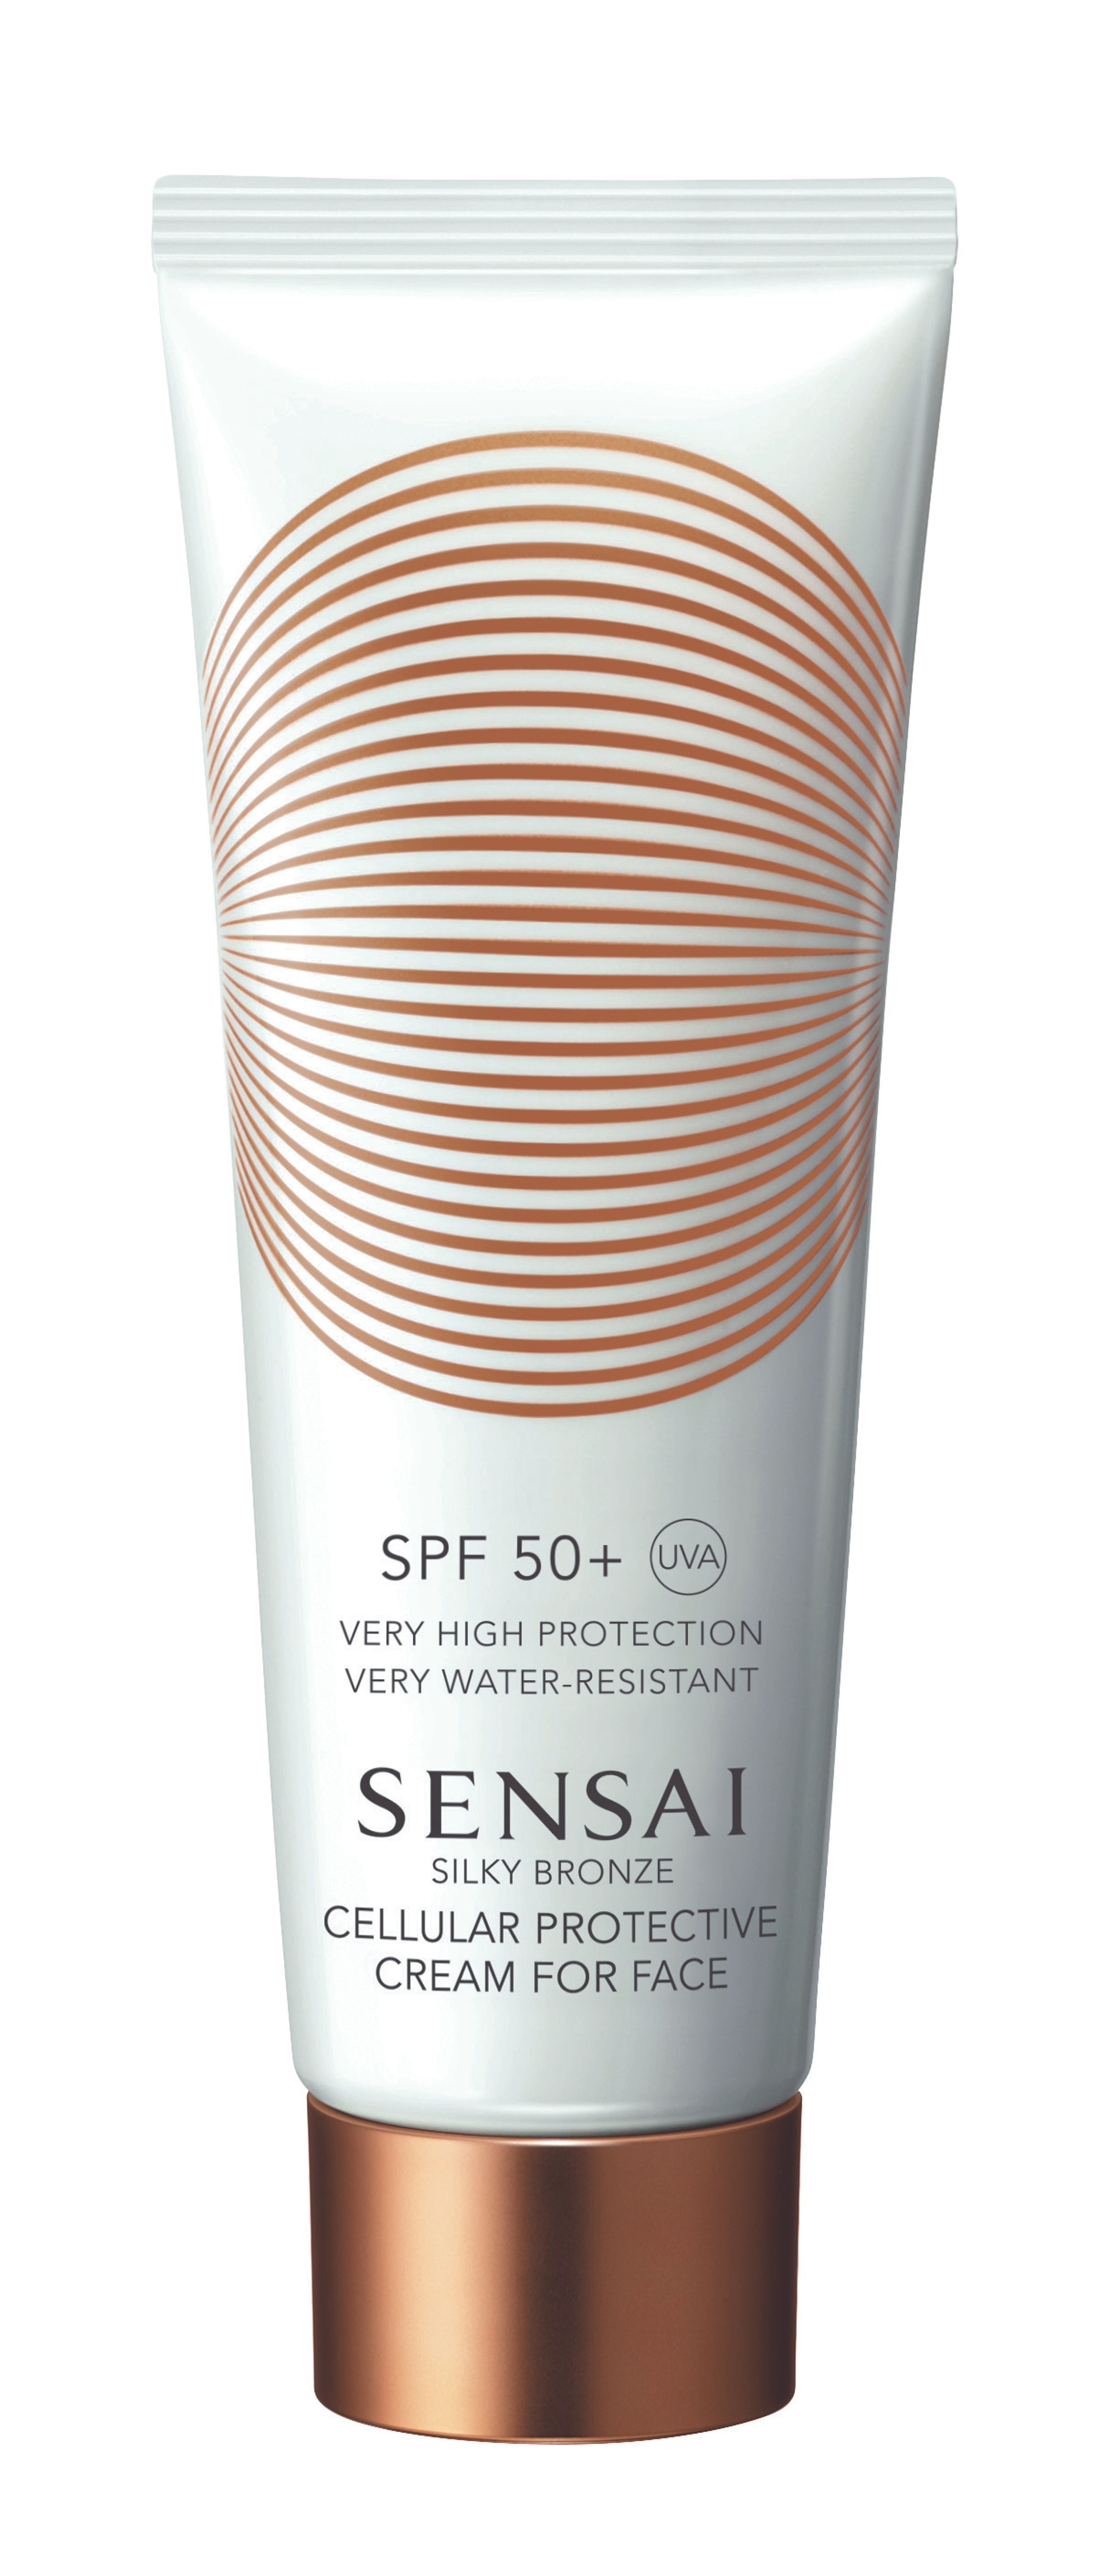 Sensai Cellular Protective Cream For Face Spf50+ 1